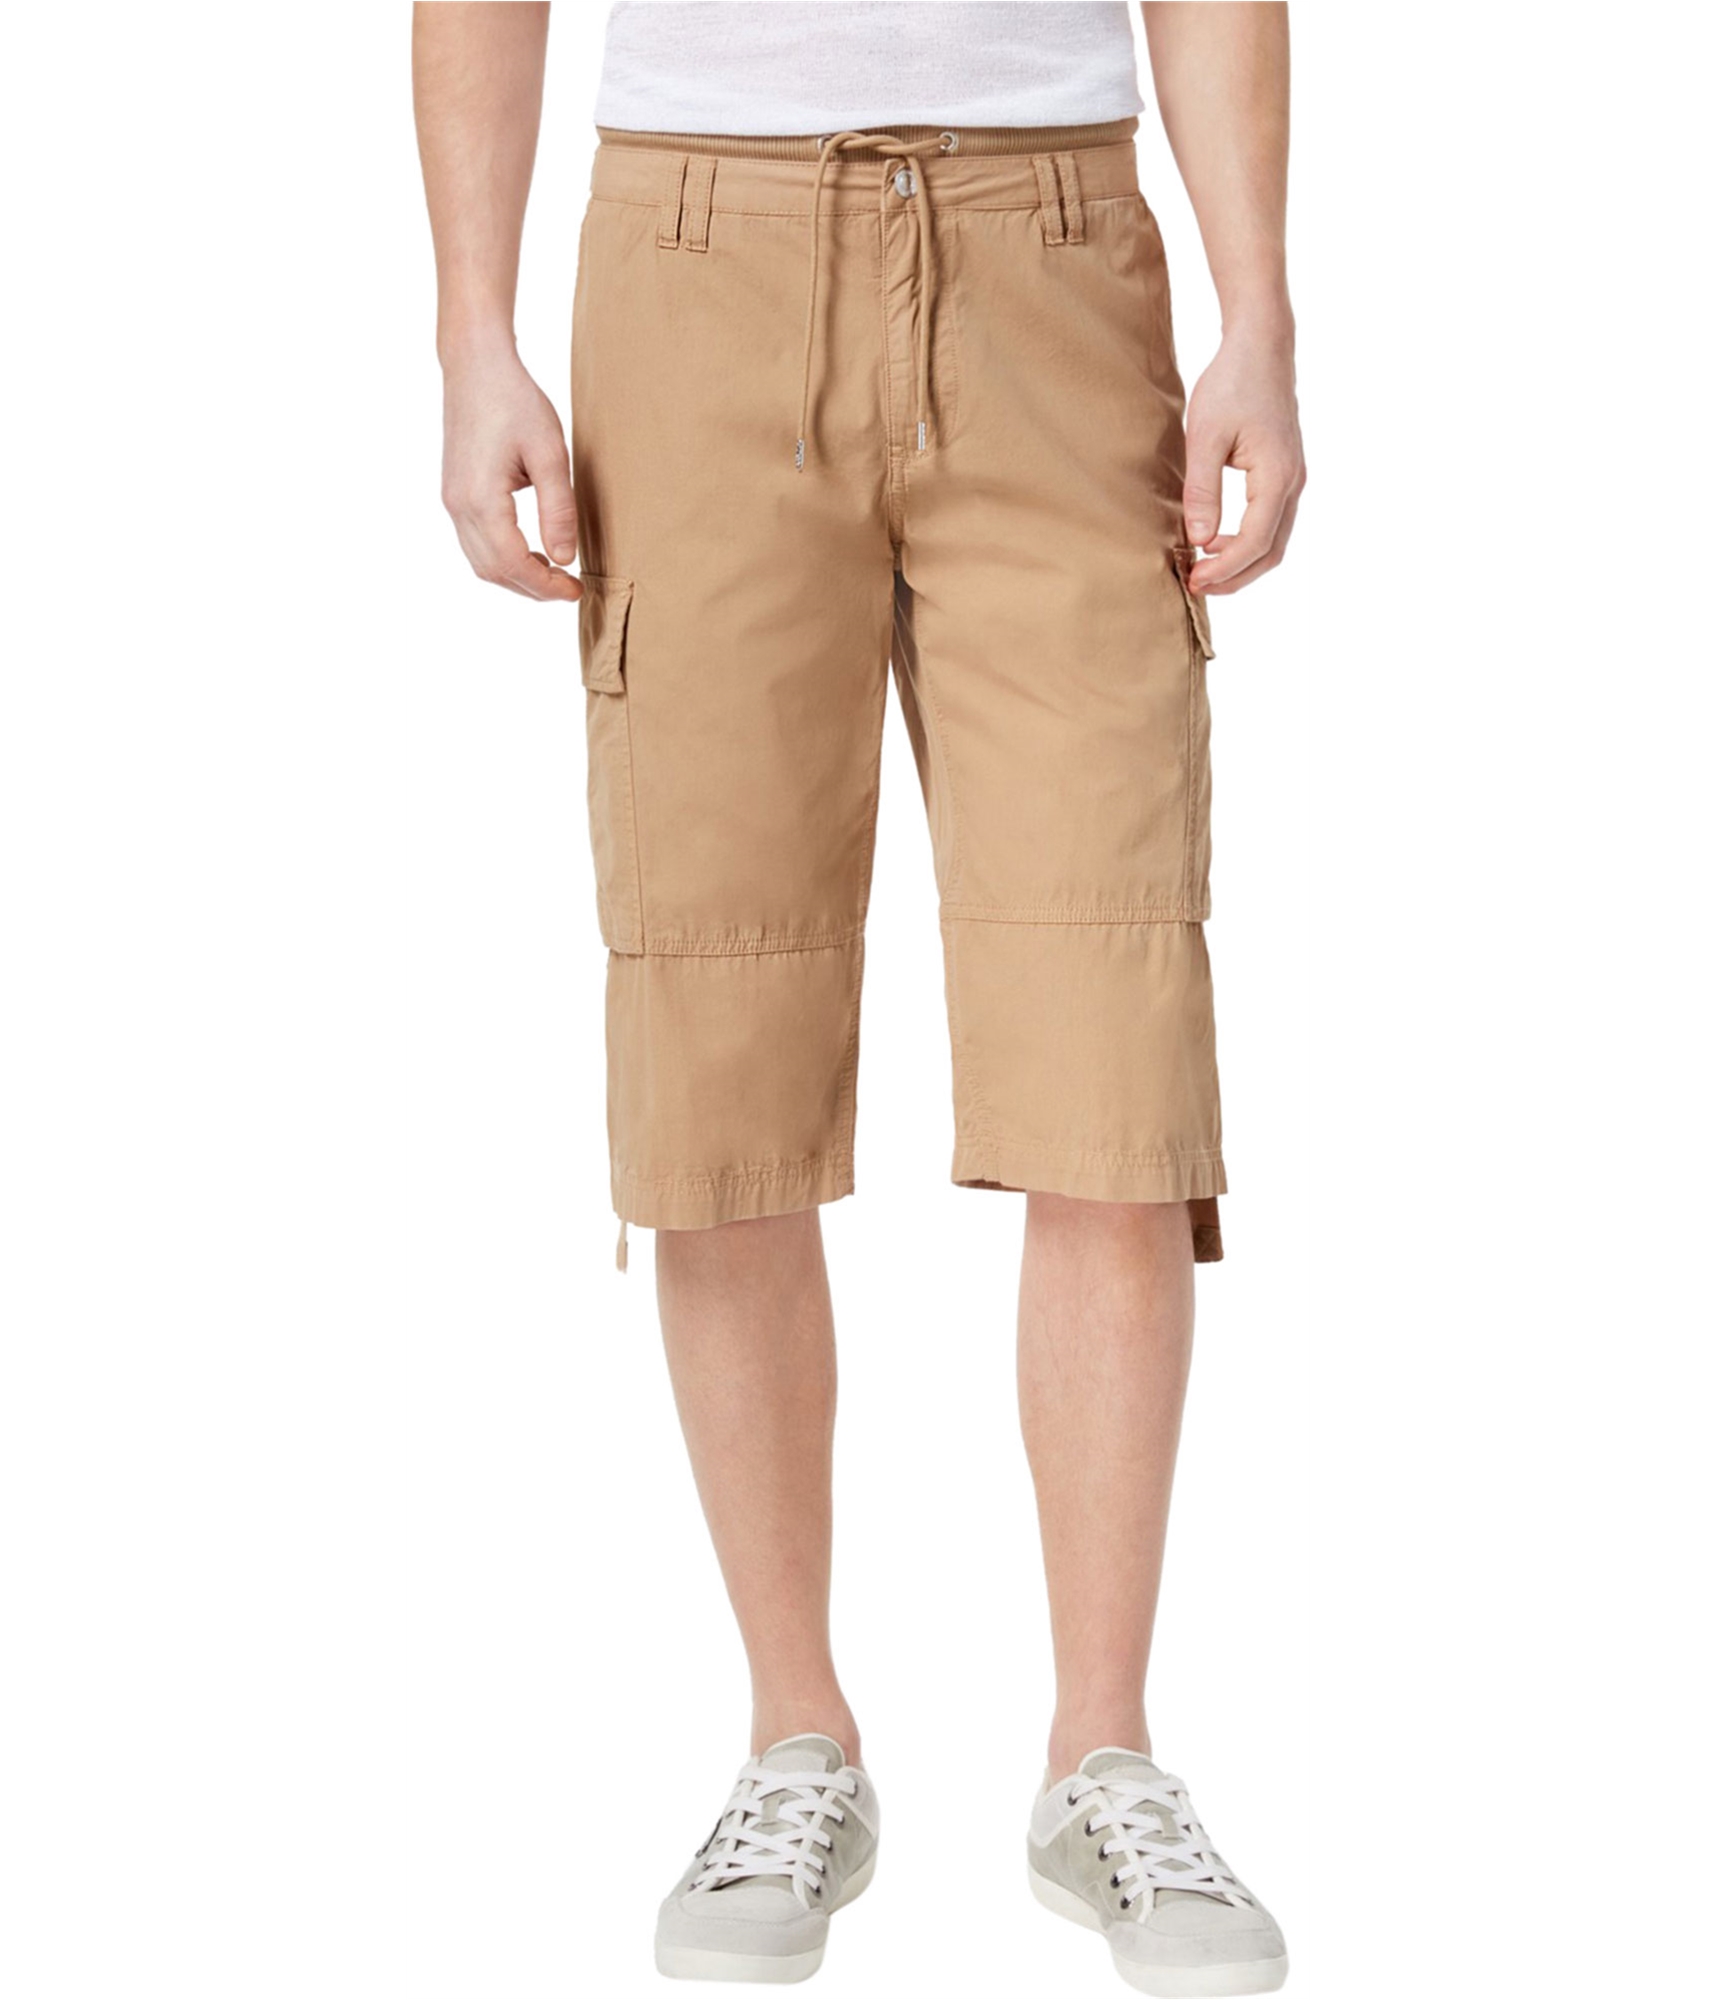 Man-wearing-cargo-shorts